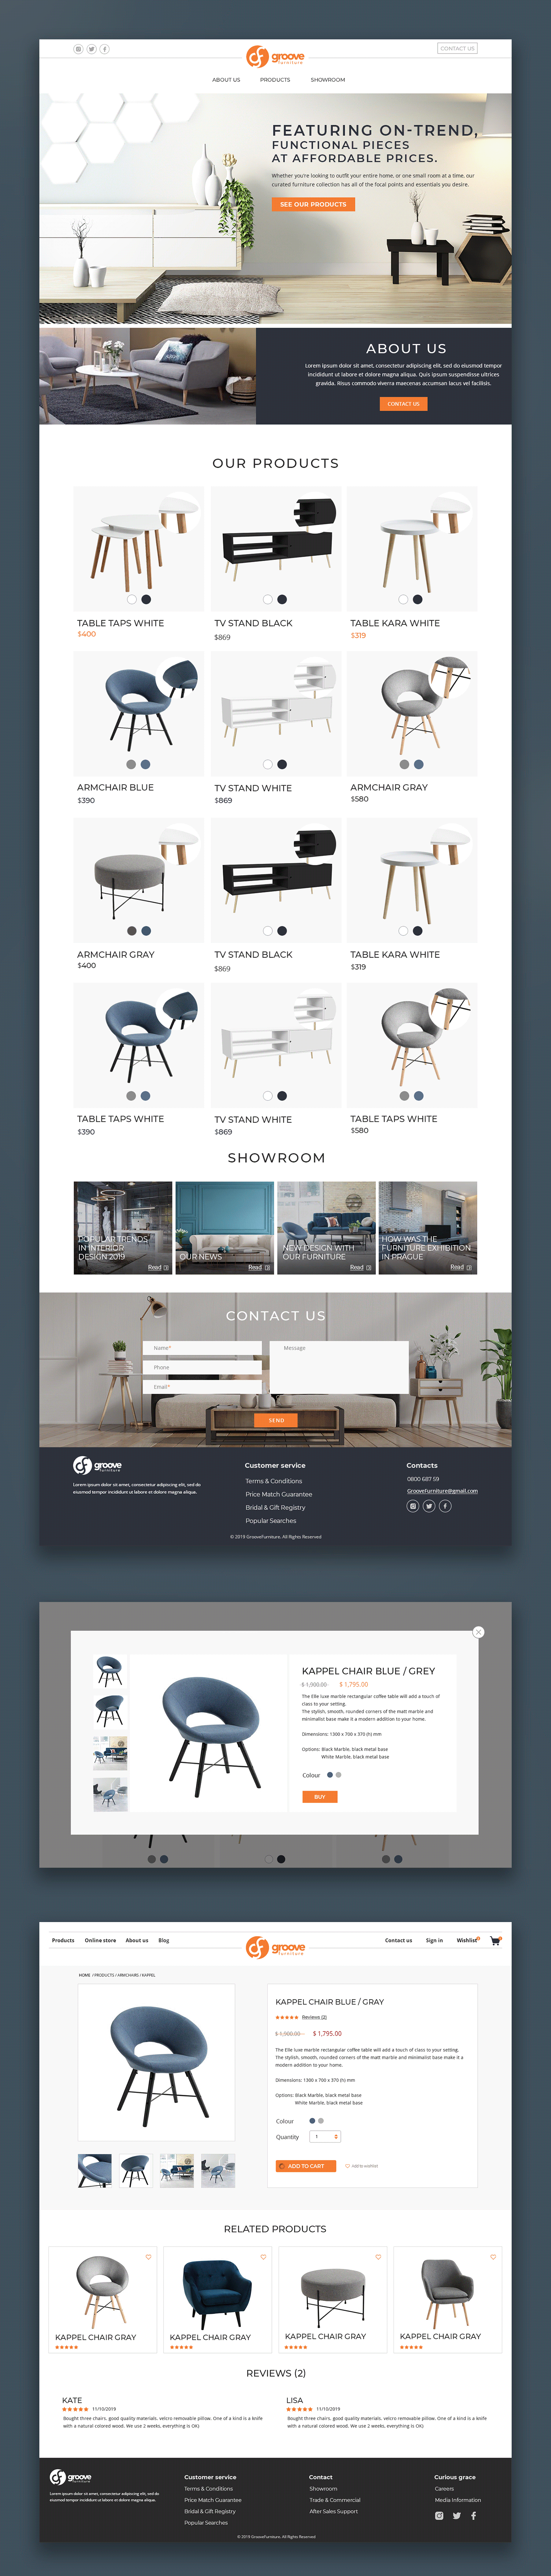 furniture Ecommerce Website Design